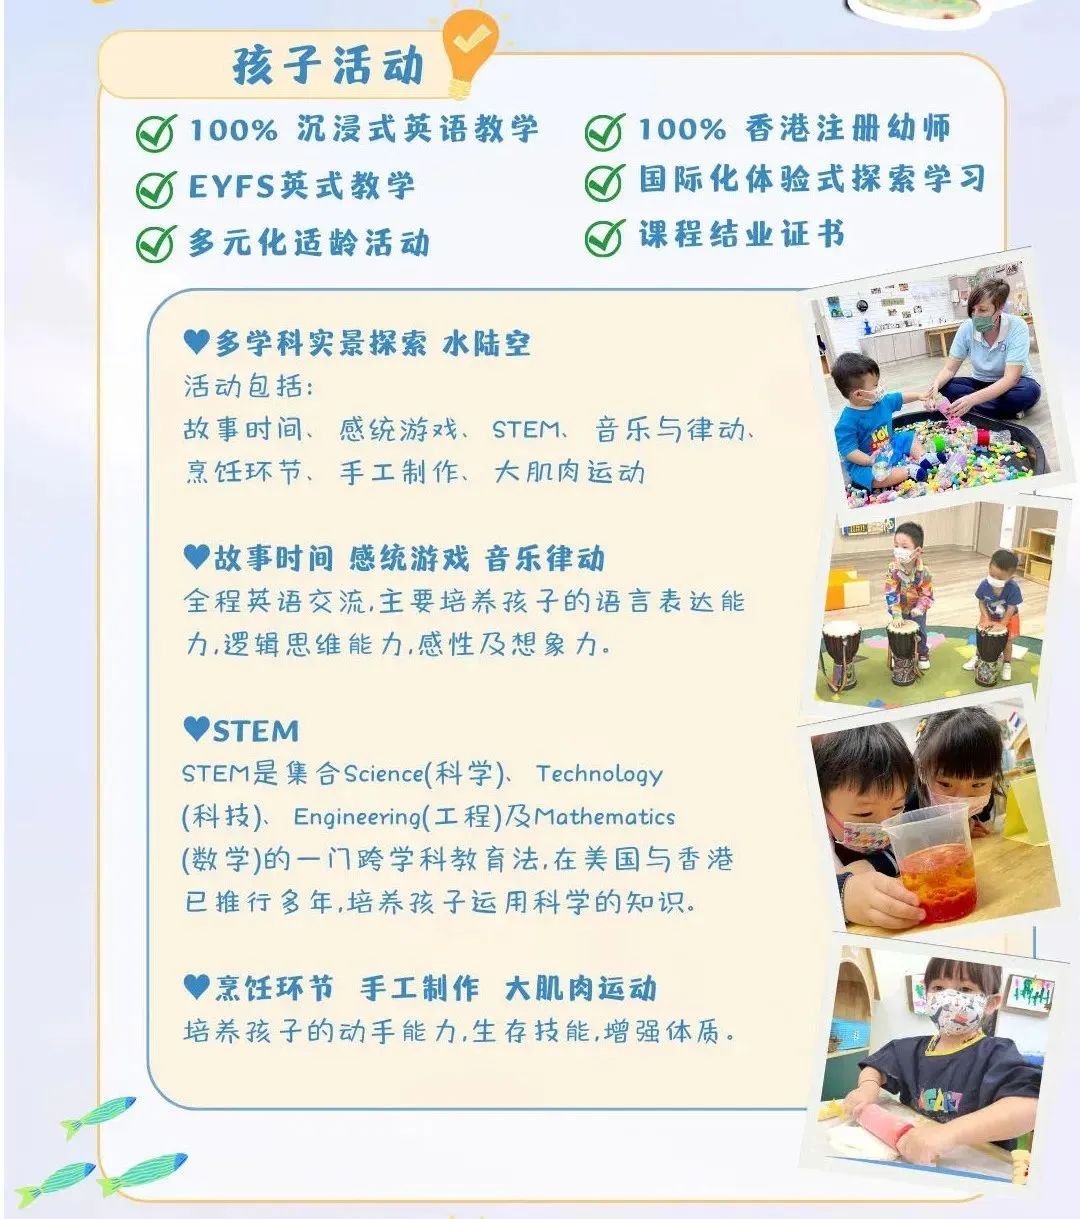 香港3-7岁英语STEM夏令营 - 海洋的探索｜访名校 拓眼界 增见闻